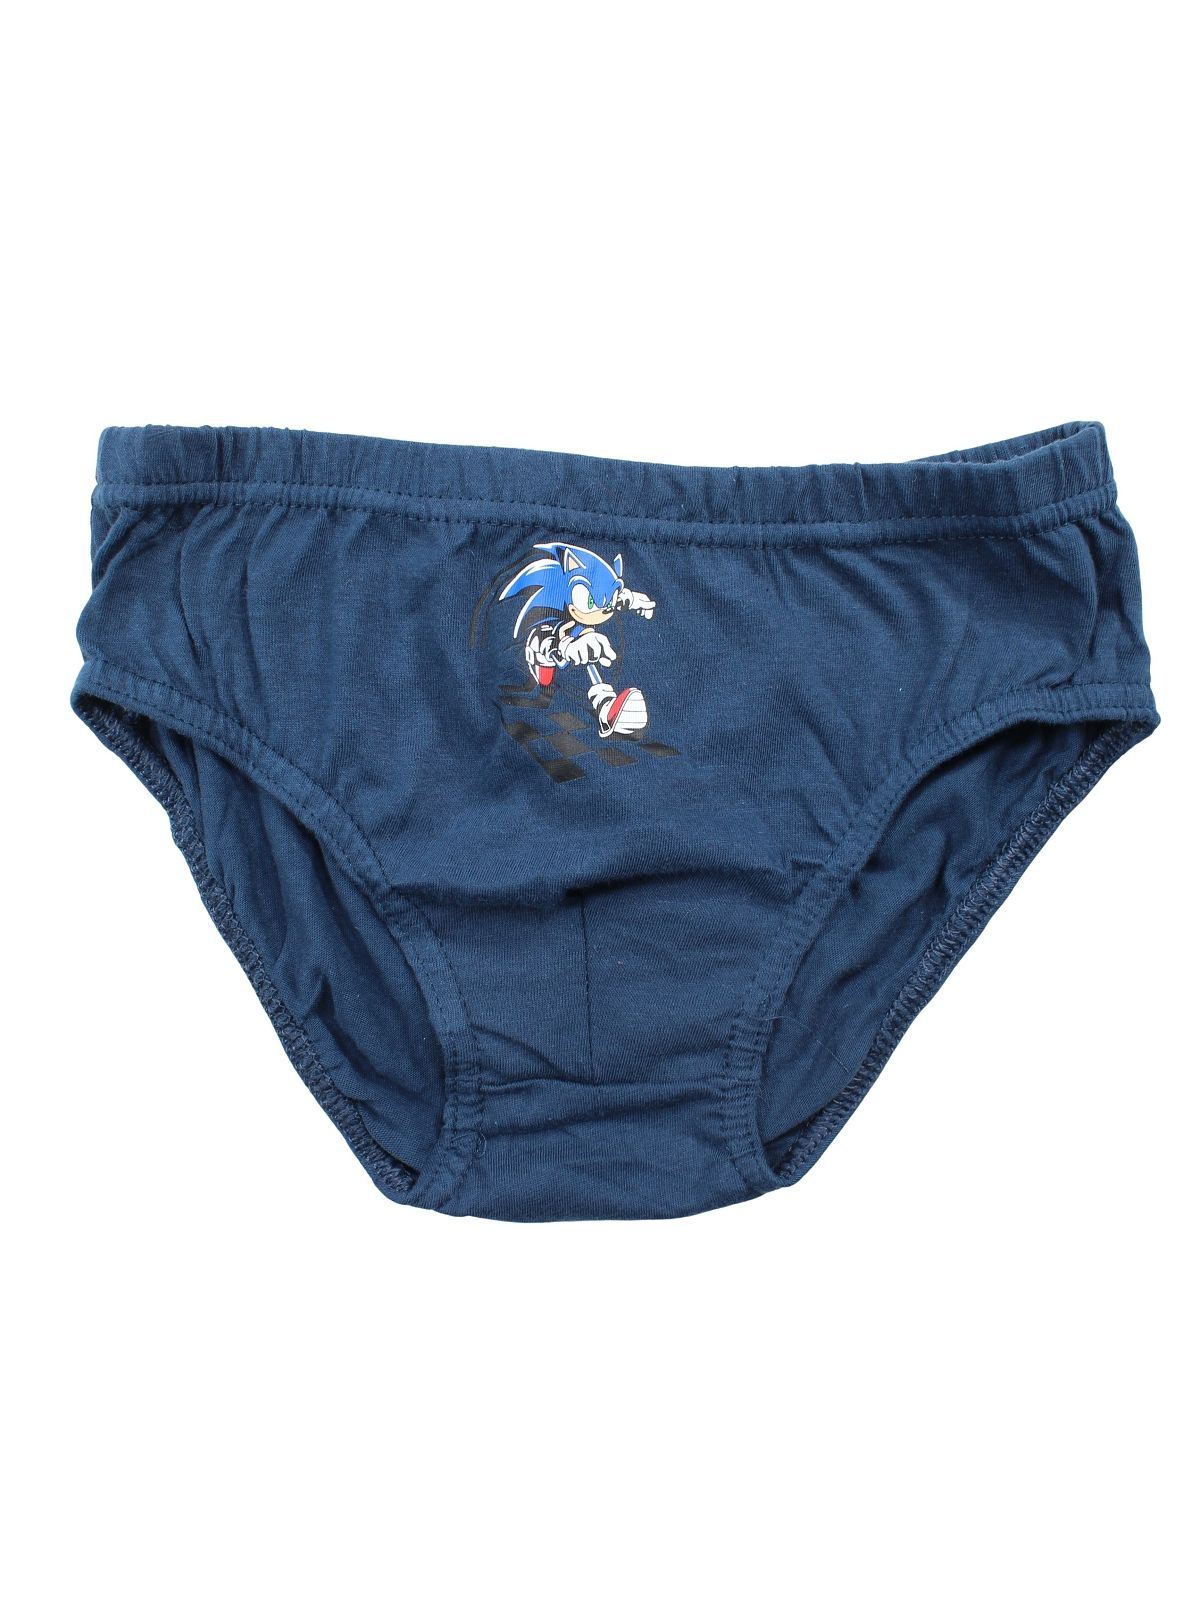 Pack of 5 Sonic panties